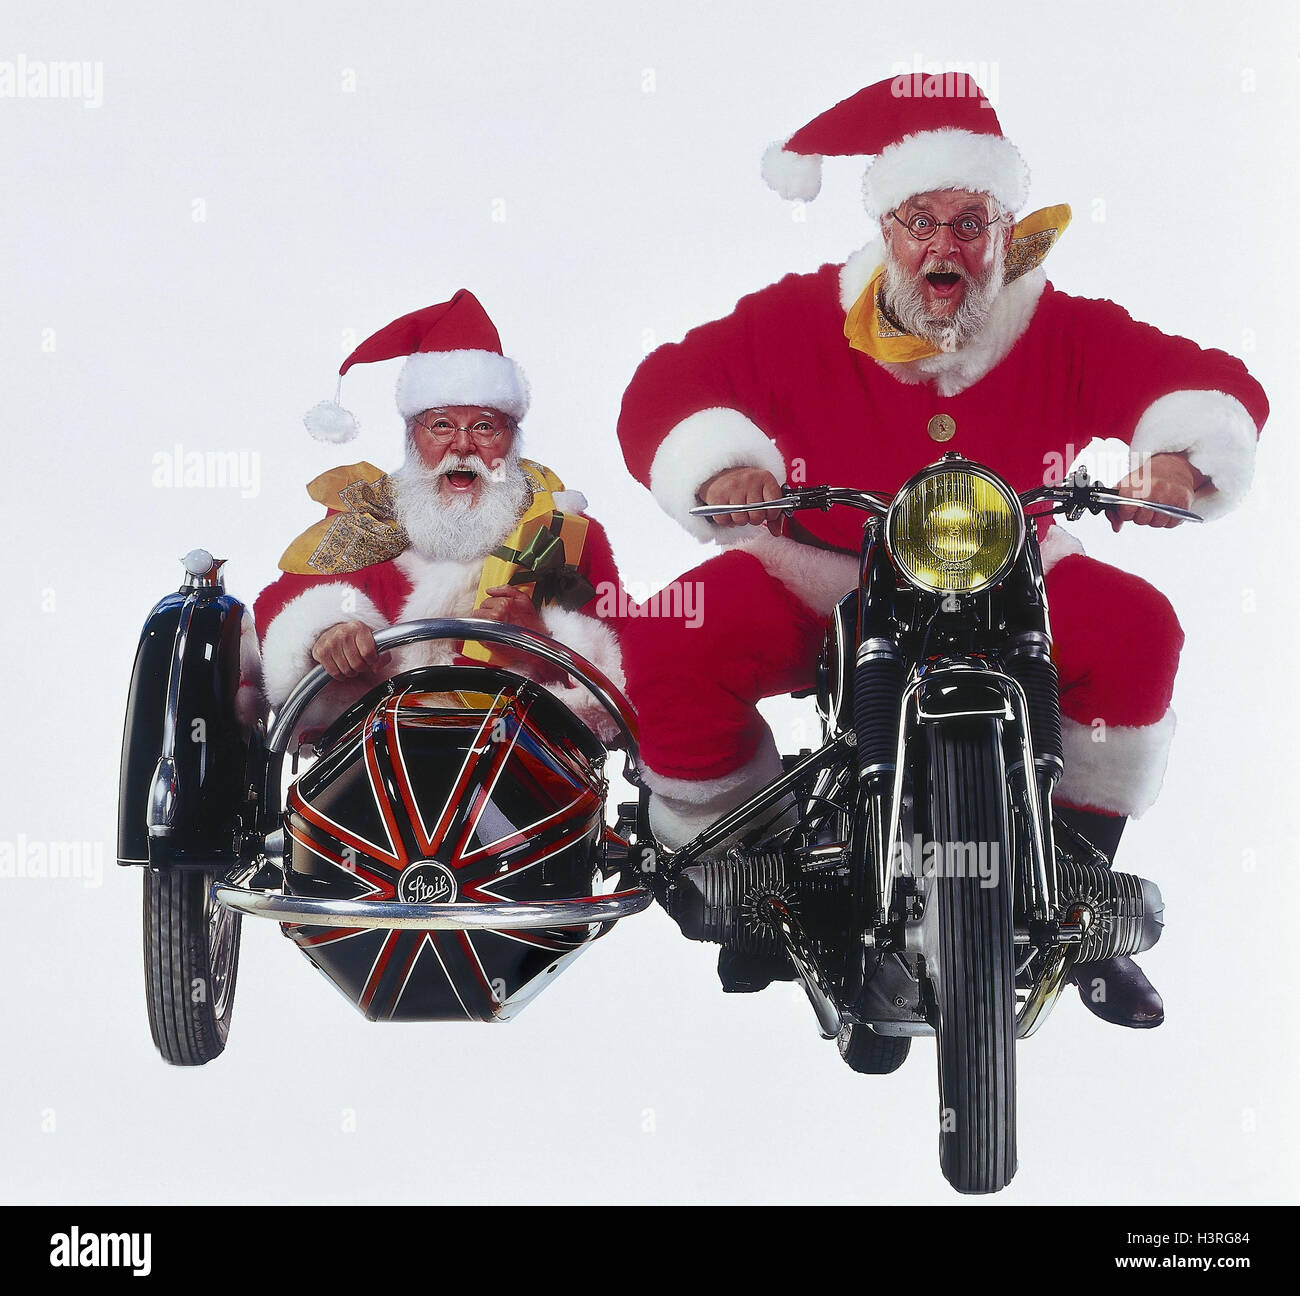 Weihnachtsmänner, Motorrad, Beiwagen, Mimik, Spaß, Freude Studio,  ausgeschnitten, Weihnachten, Weihnachten, Weihnachtsmann, Santa, zwei,  Motorrad fahren, Oldtimer, glücklich Stockfotografie - Alamy